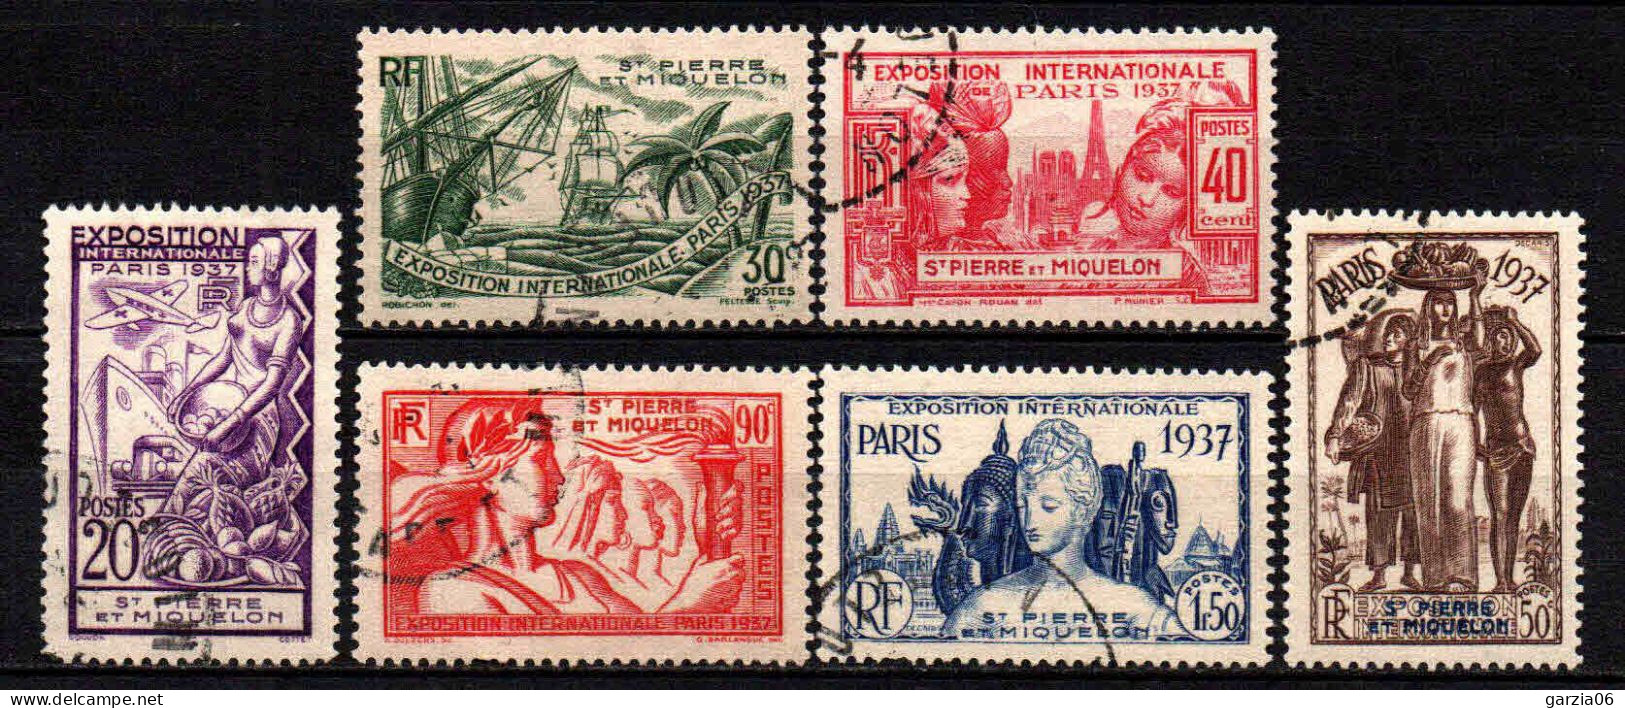 St Pierre Et Miquelon - 1937 - Exposition Internationale De Paris - N° 160 à 165 - Oblit - Used - Gebruikt